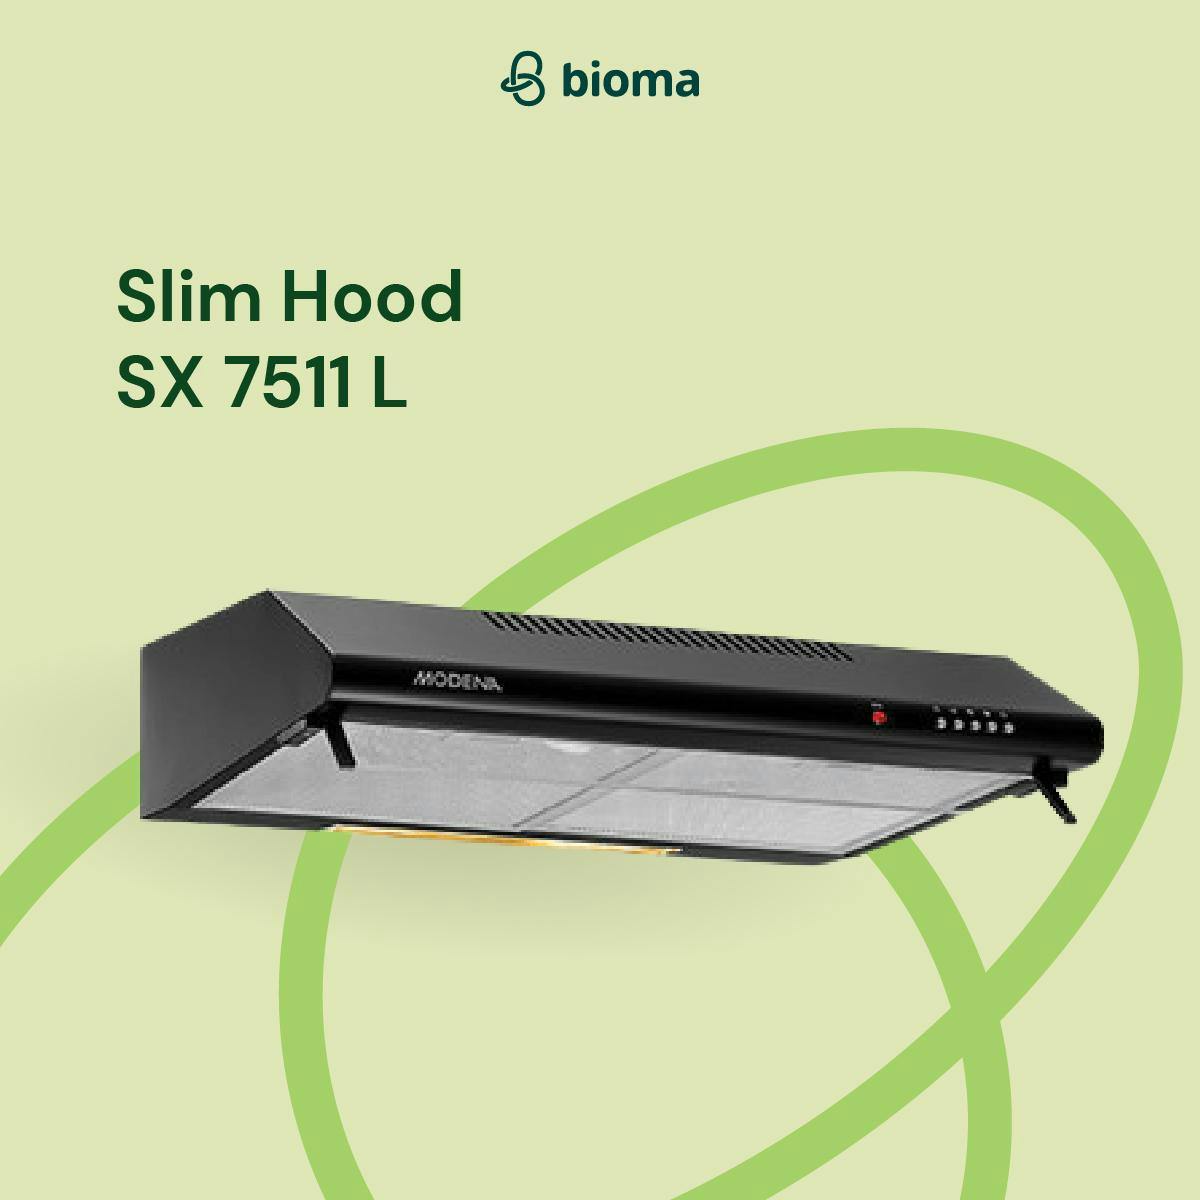 Slim Hood SX 7511 L